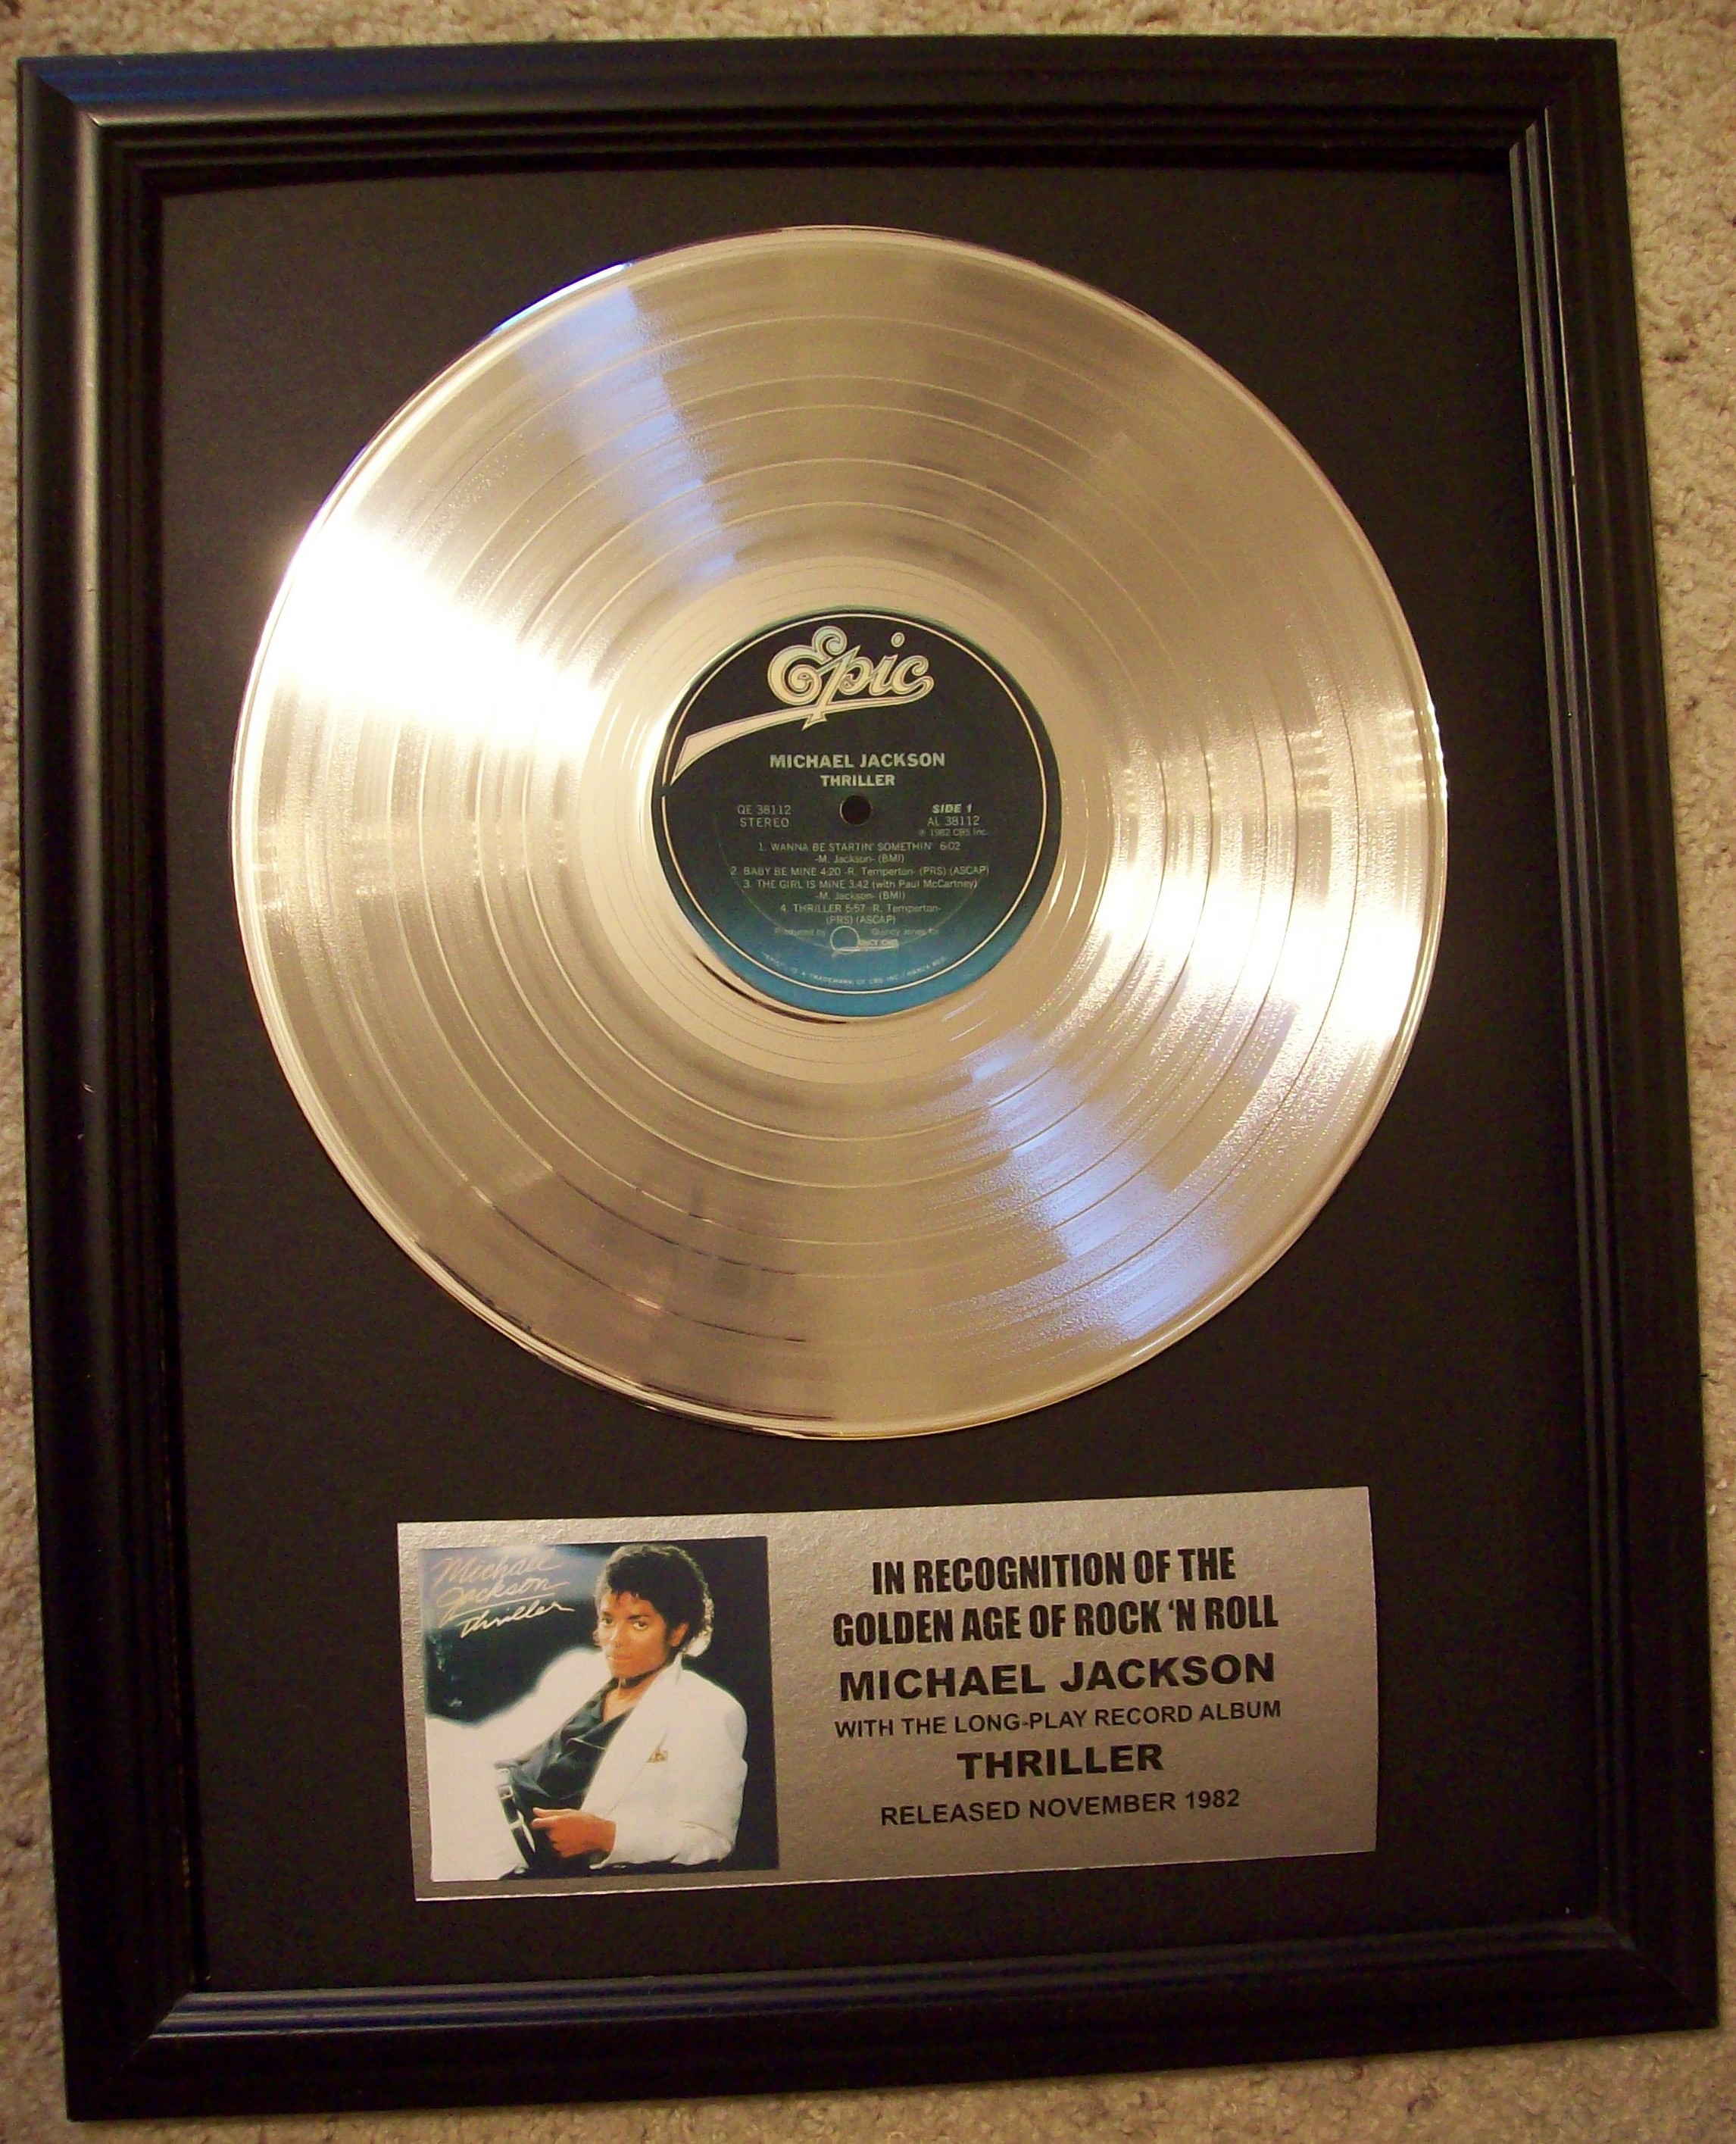 Image for Michael Jackson "Thriller" Platinum LP Record Album